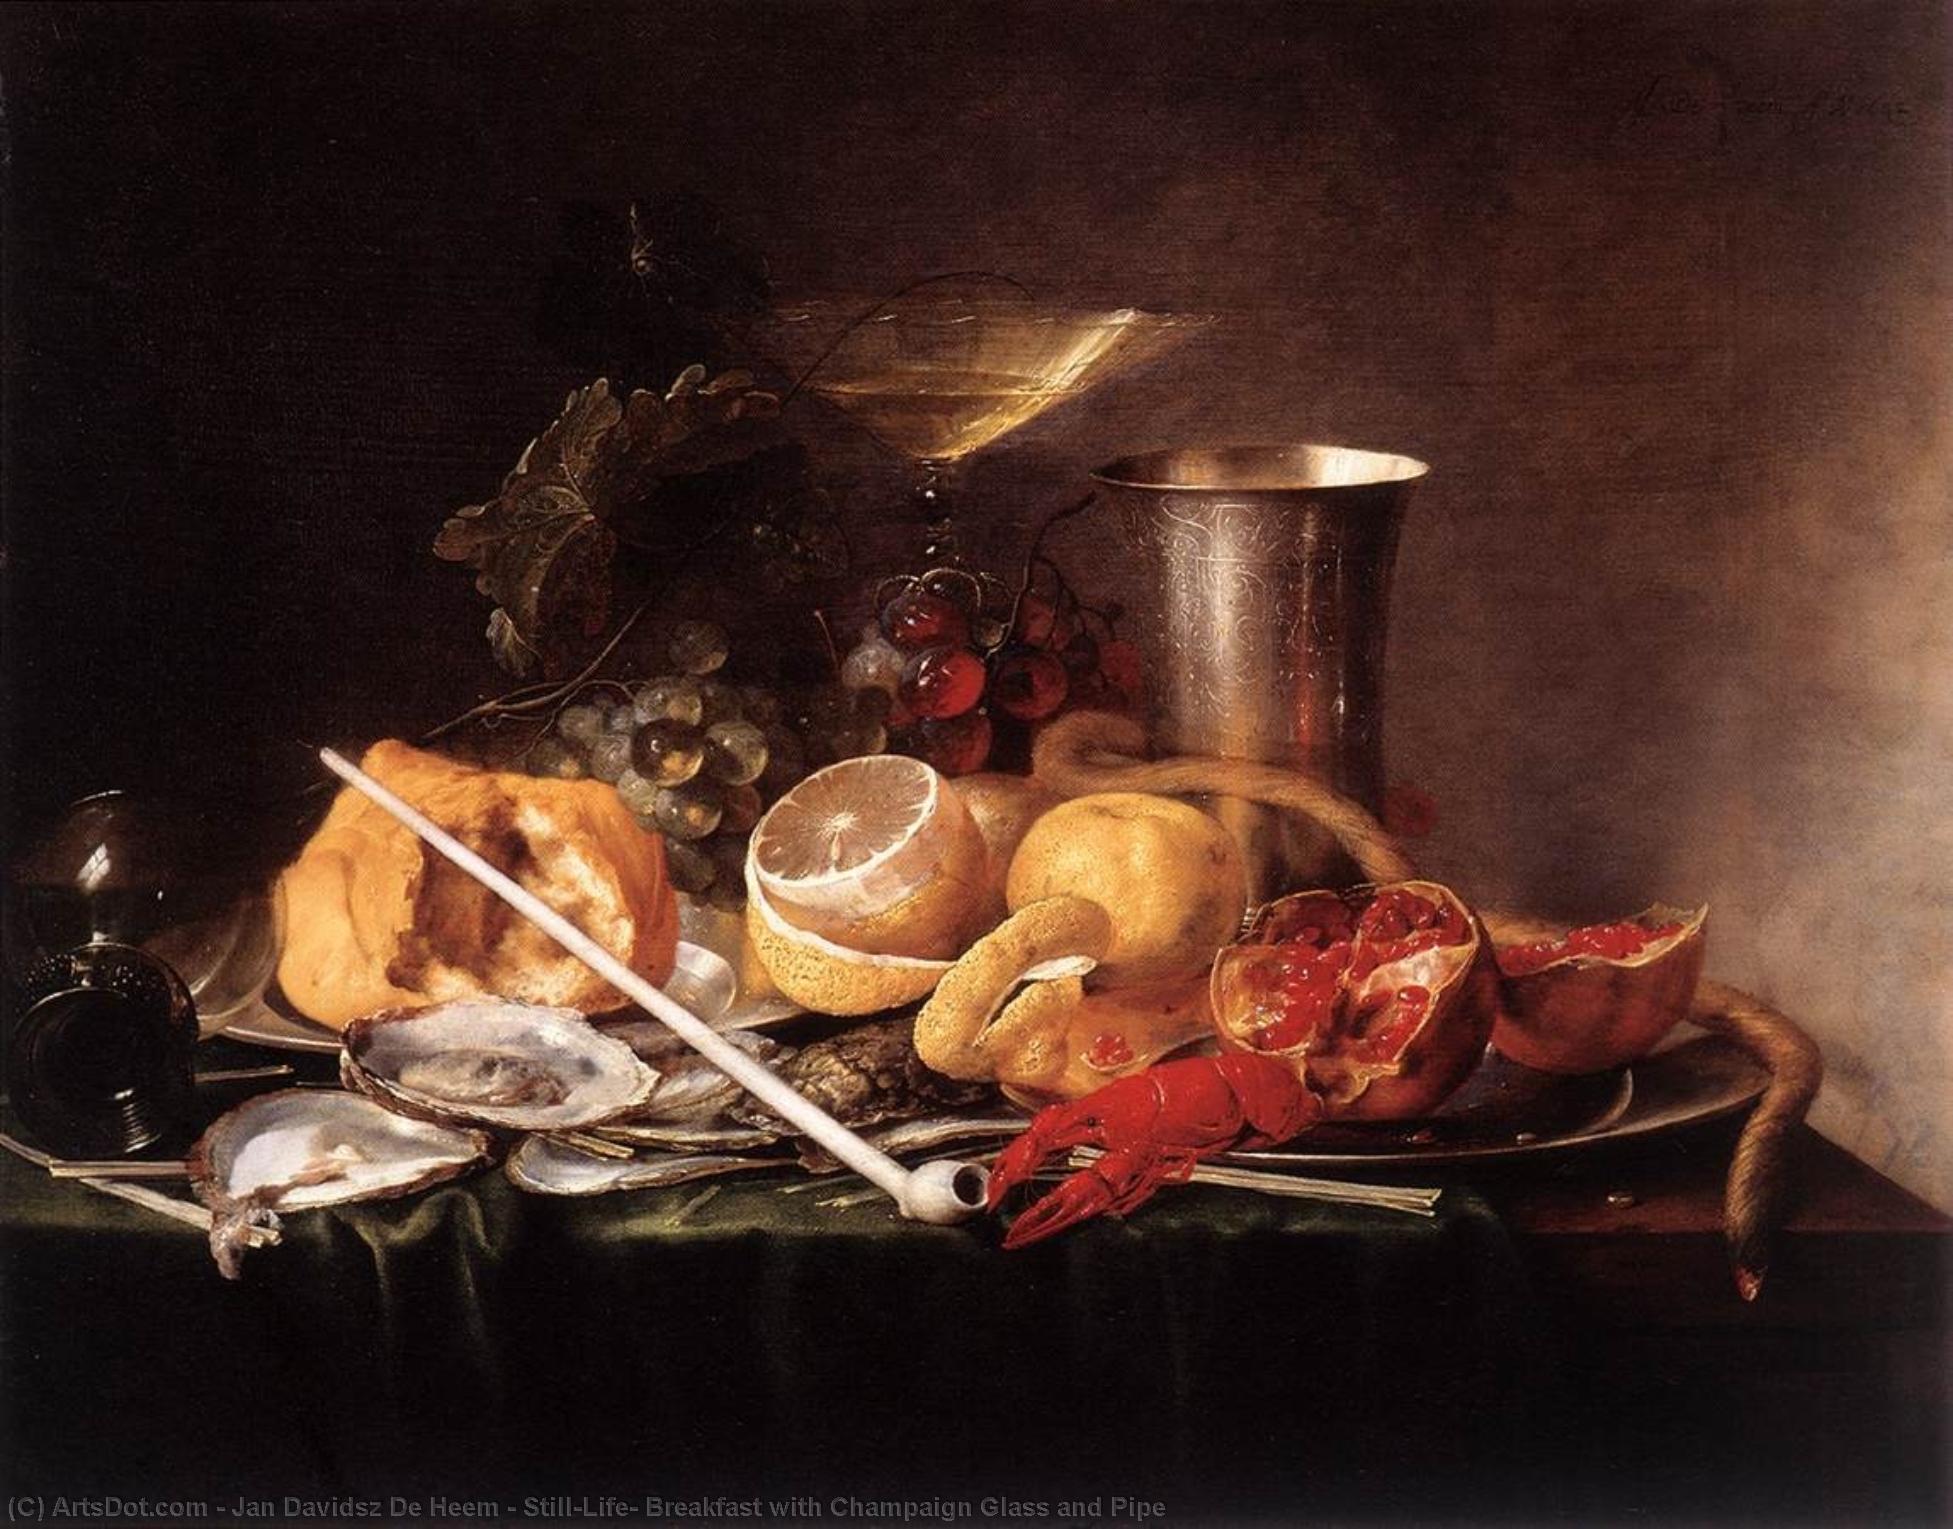 WikiOO.org - Enciclopedia of Fine Arts - Pictura, lucrări de artă Jan Davidsz De Heem - Still-Life, Breakfast with Champaign Glass and Pipe